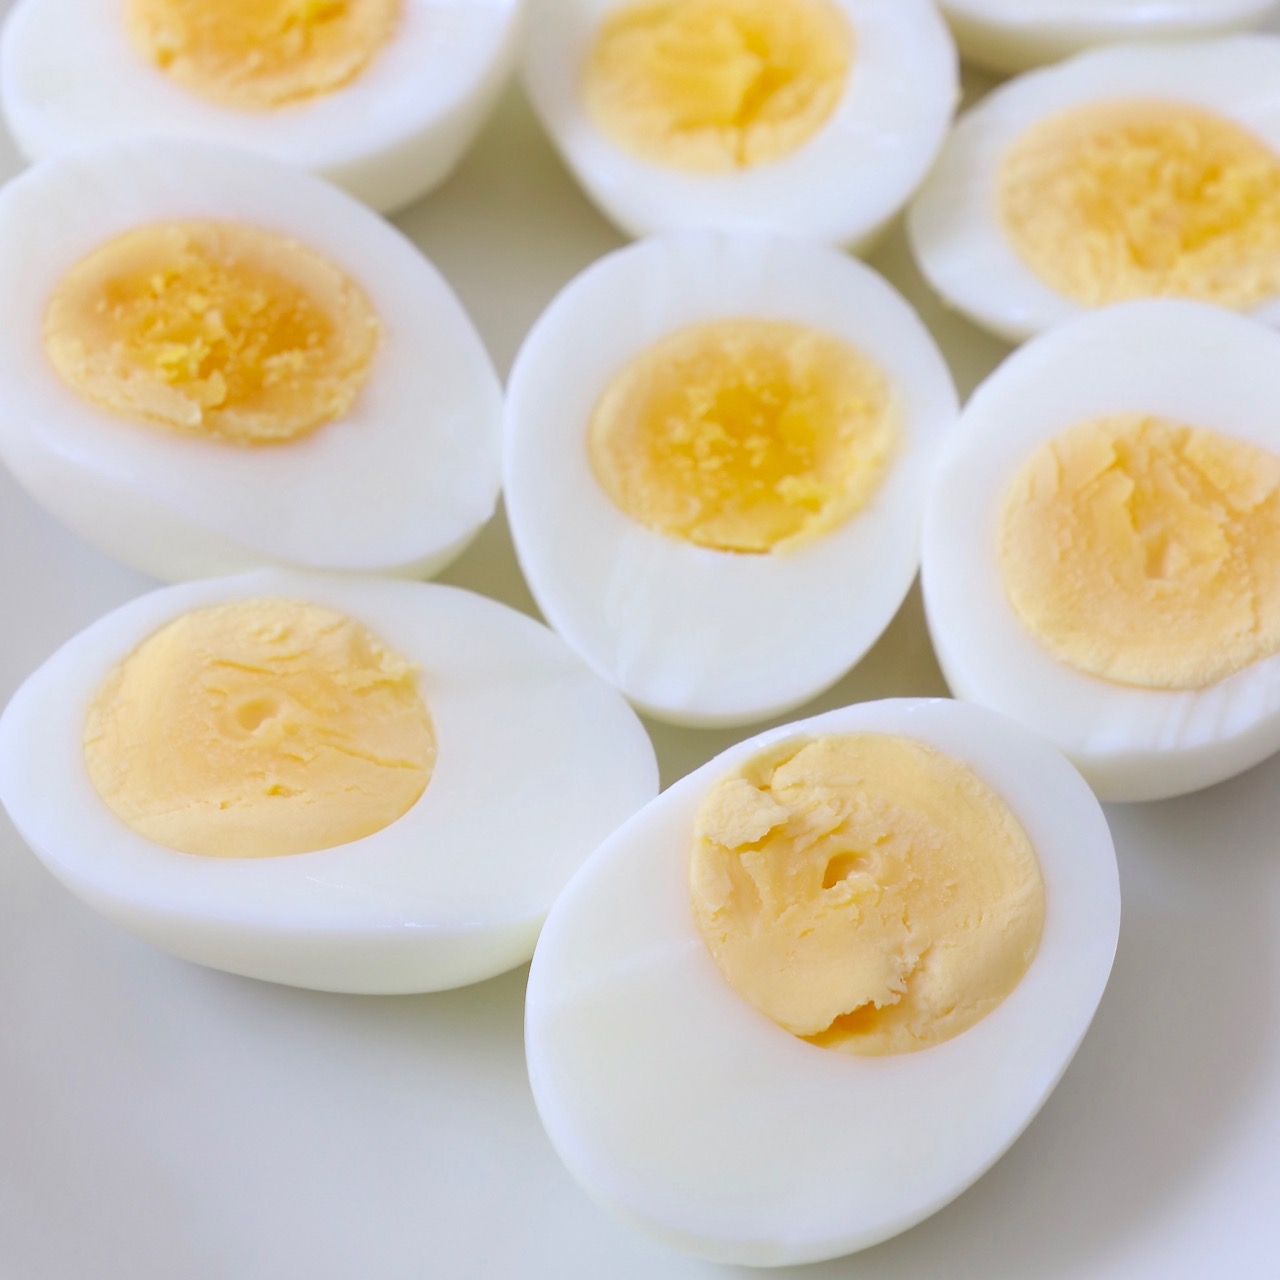 https://whitneybond.com/wp-content/uploads/2022/09/hard-boiled-eggs-16.jpg